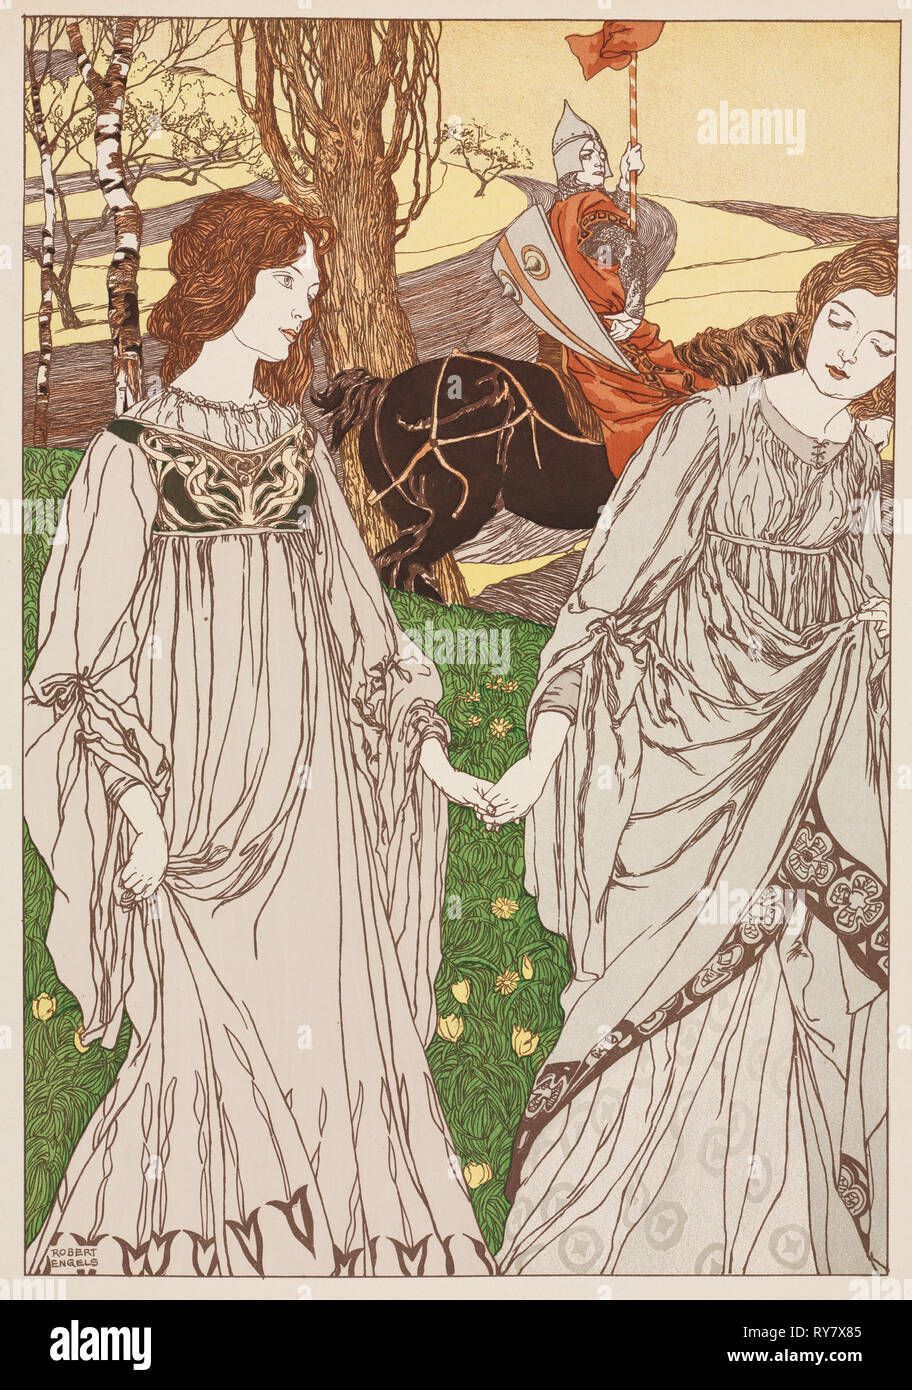 Publié dans l'estampe moderne : l'Passer-By (Le Passant), 1897. Robert Engels (britannique, 1855-1926). Lithographie couleur ; feuille : 40 x 30,6 cm (15 3/4 x 12 1/16 in.) ; image : 34,9 x 23,9 cm (13 3/4 x 9 7/16 in Banque D'Images